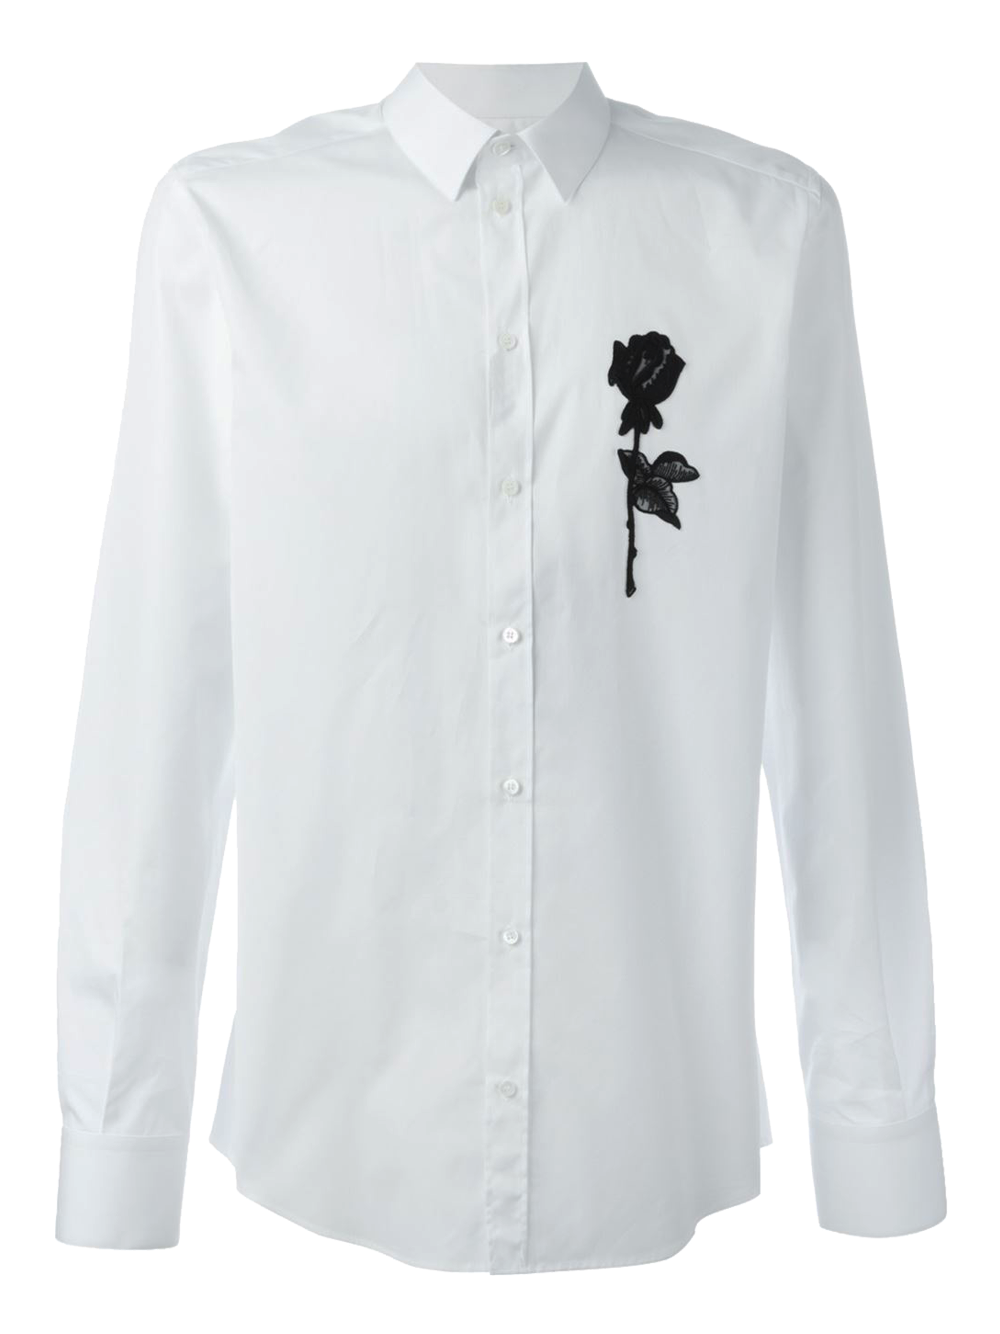 Рубашка, Dolce &amp; Gabbana. Белоснежная сорочка из хлопкового поплина с вышитой на груди розой в стиле сицилийского барокко &mdash; элегантный и непретенциозный вариант для дружеского коктейля.